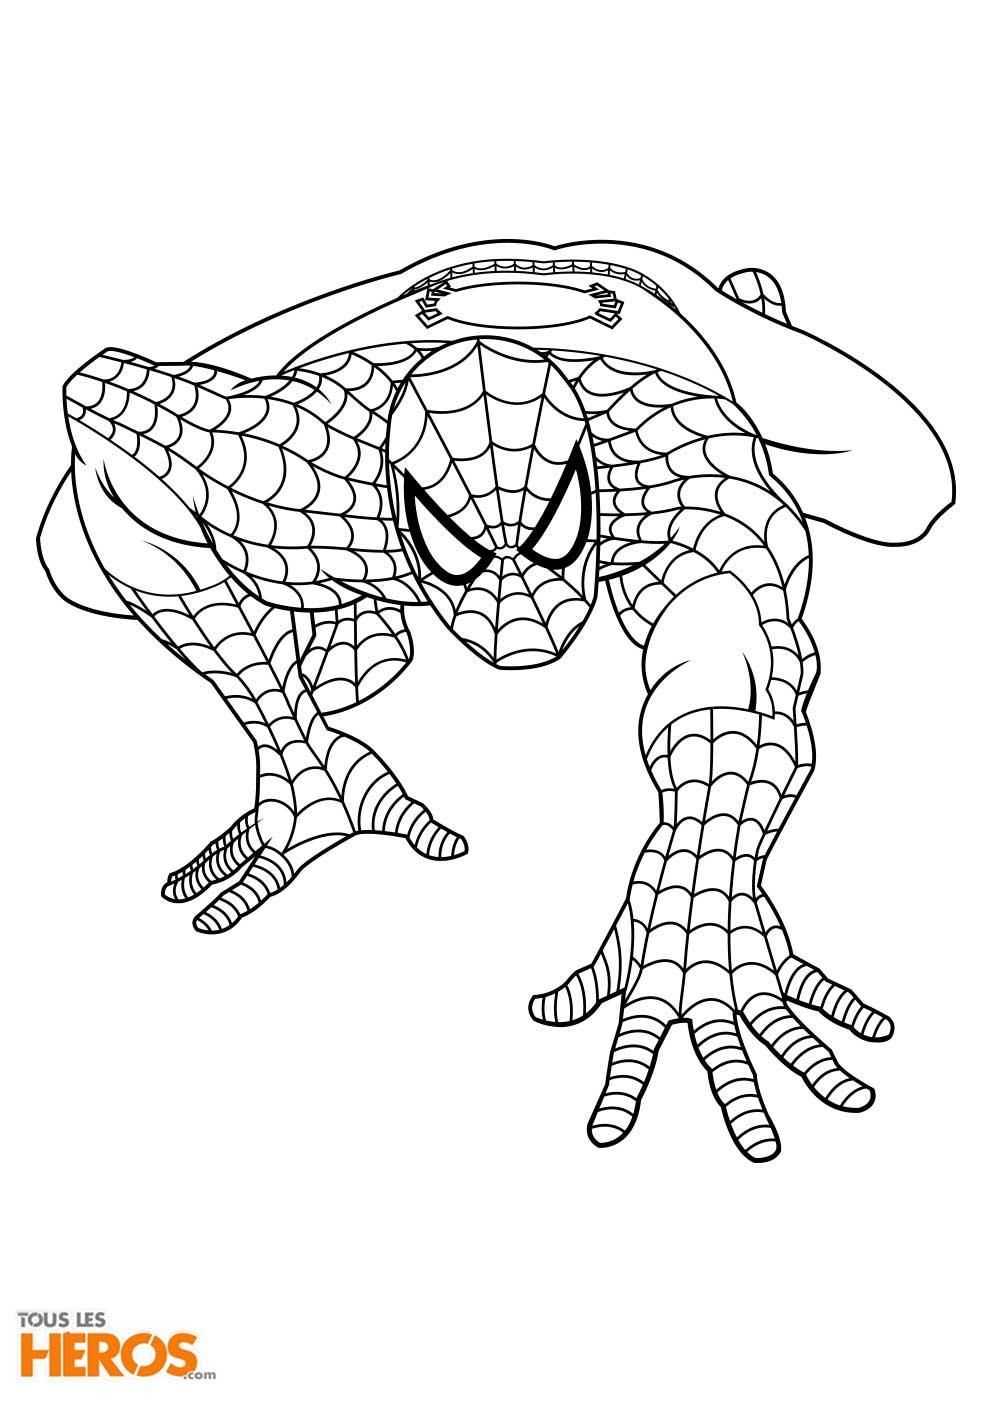 Coloriage Imprimer Spiderman Gratuit - Coloriage Imprimer encequiconcerne Dessin De Spiderman,